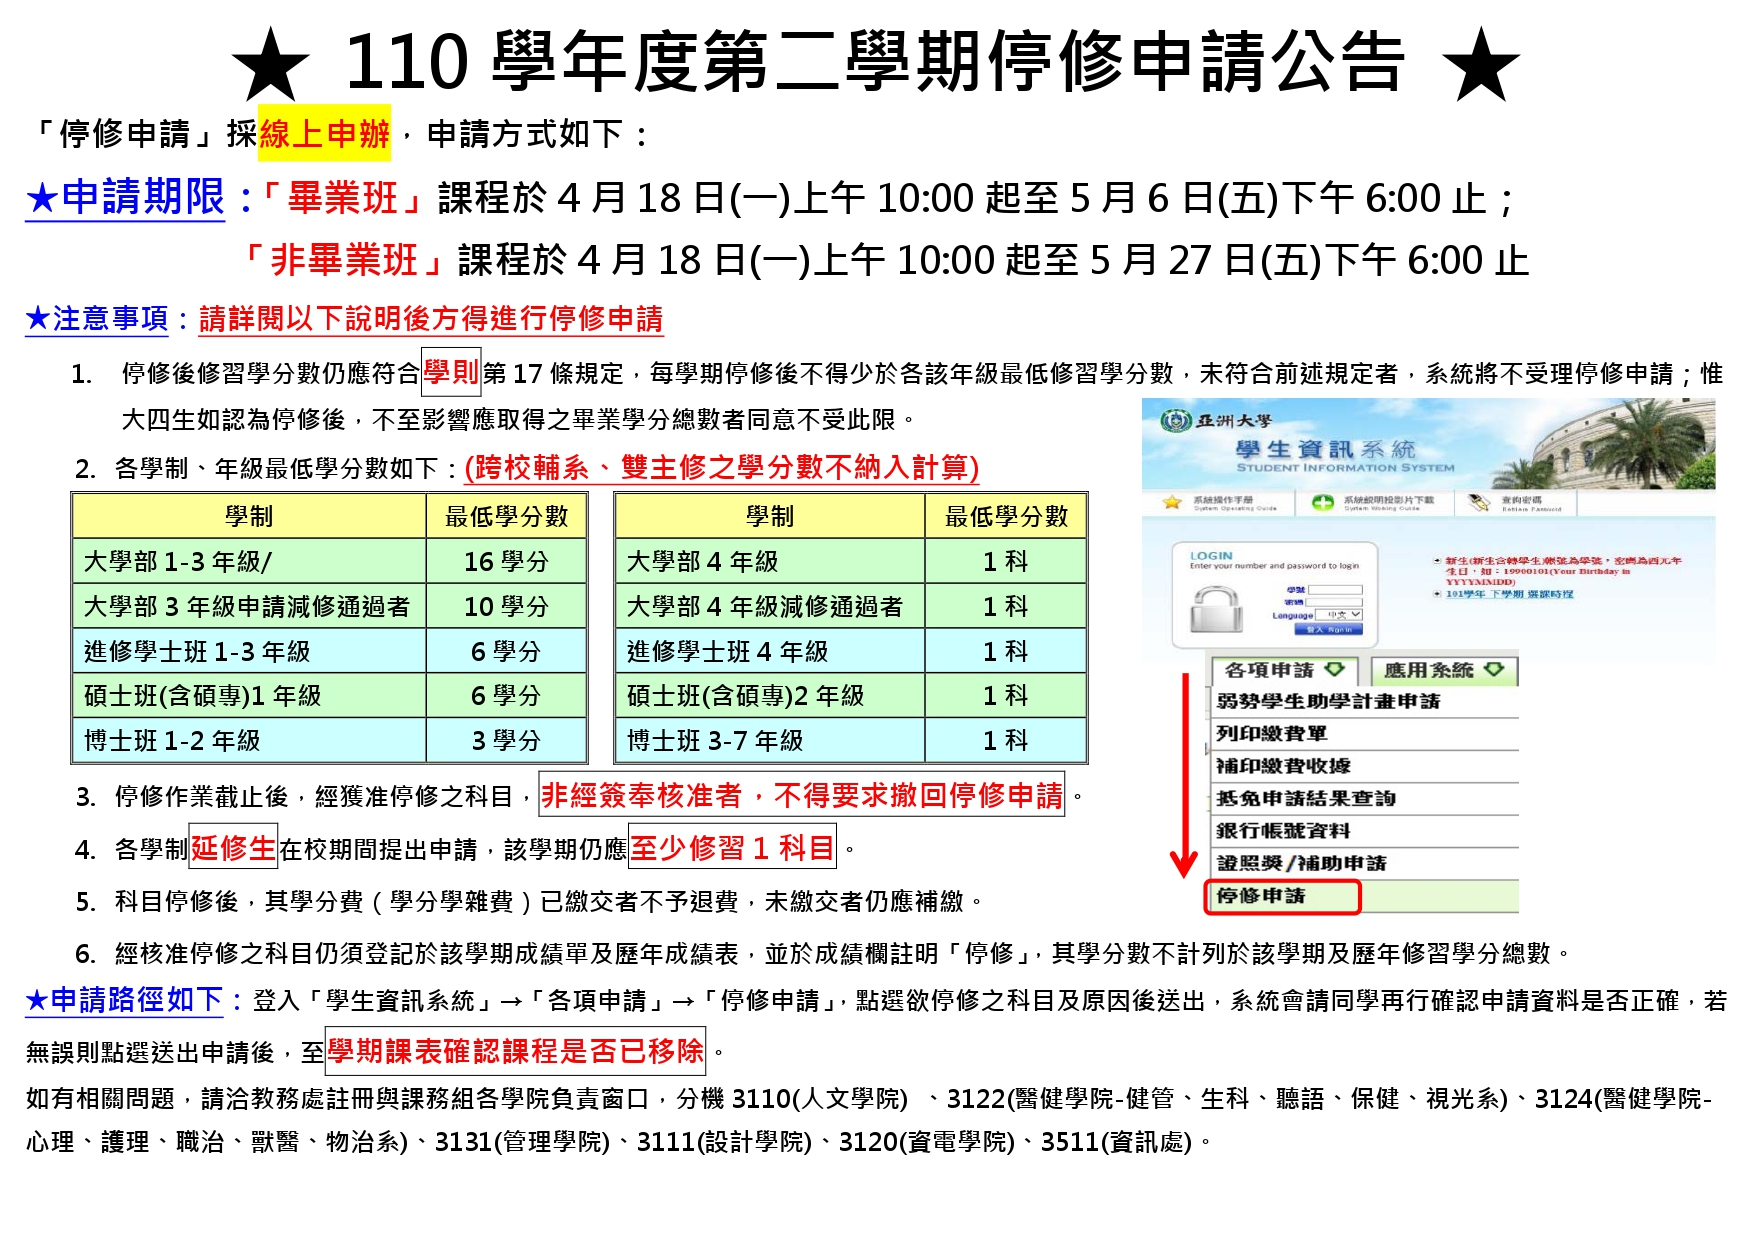 110-2停修申請公告_中文_page-0001